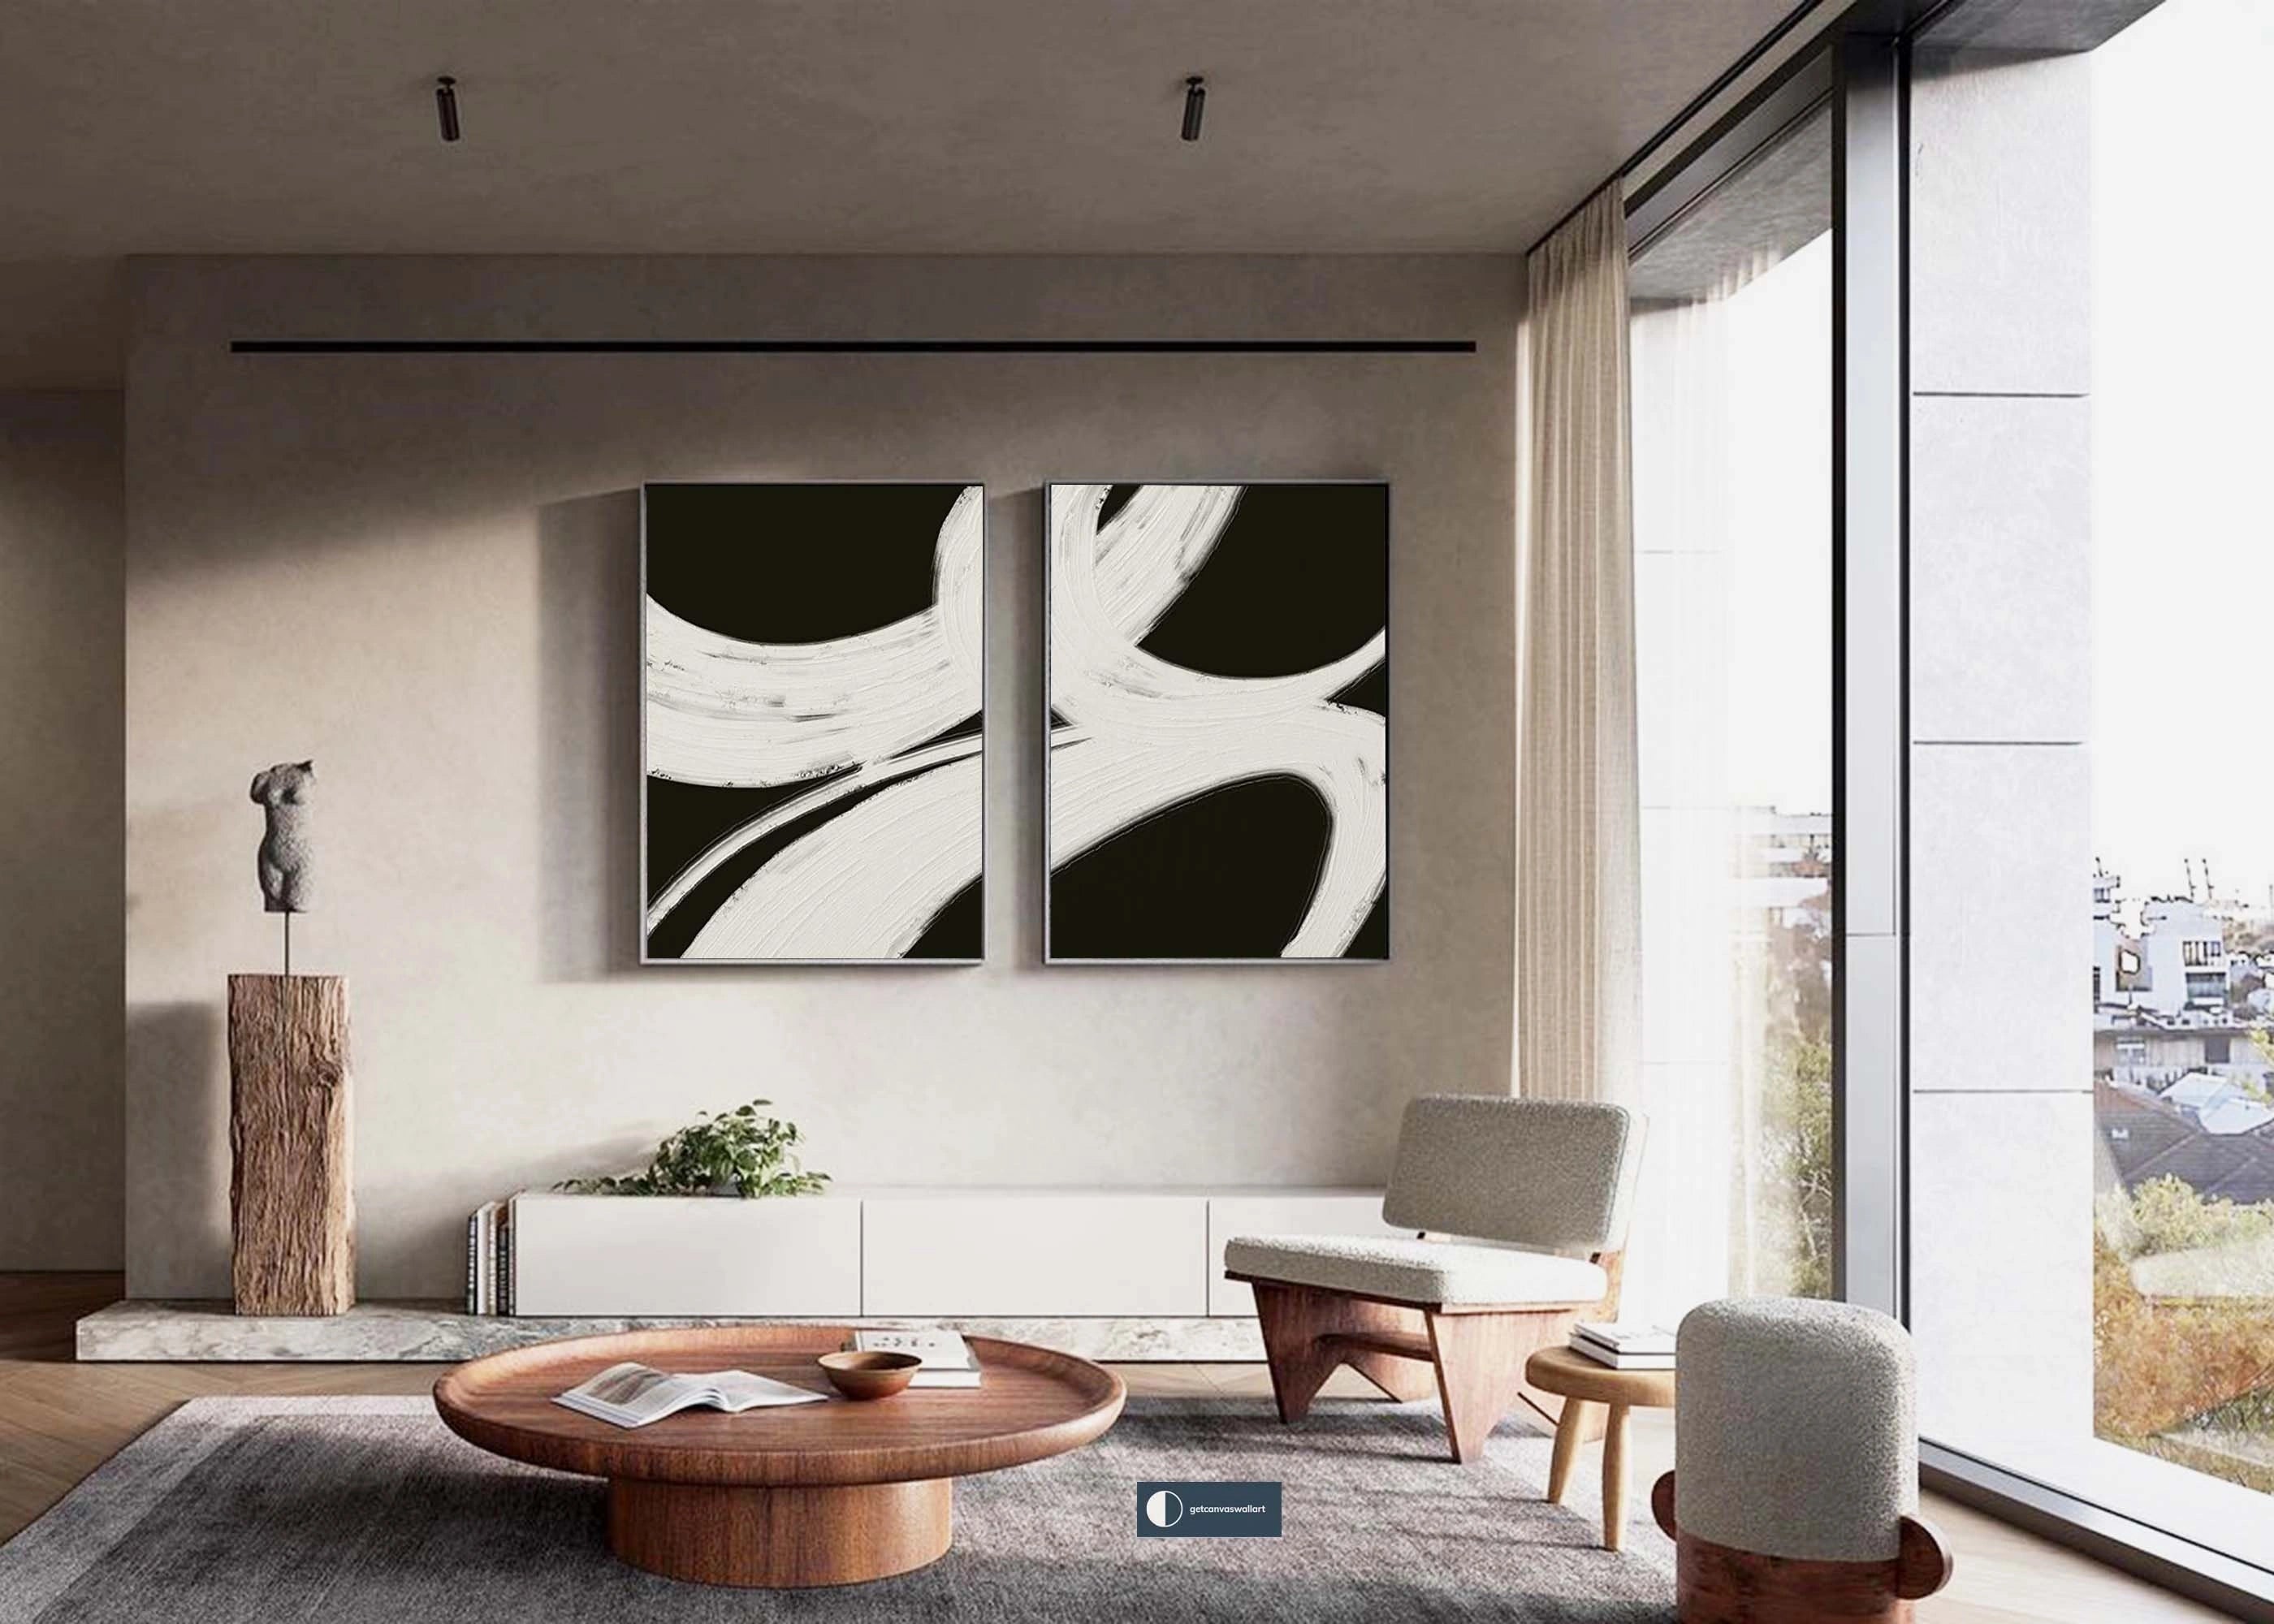 Geometric Wabi Sabi Black Beige Abstract Painting on Canvas Set of 2